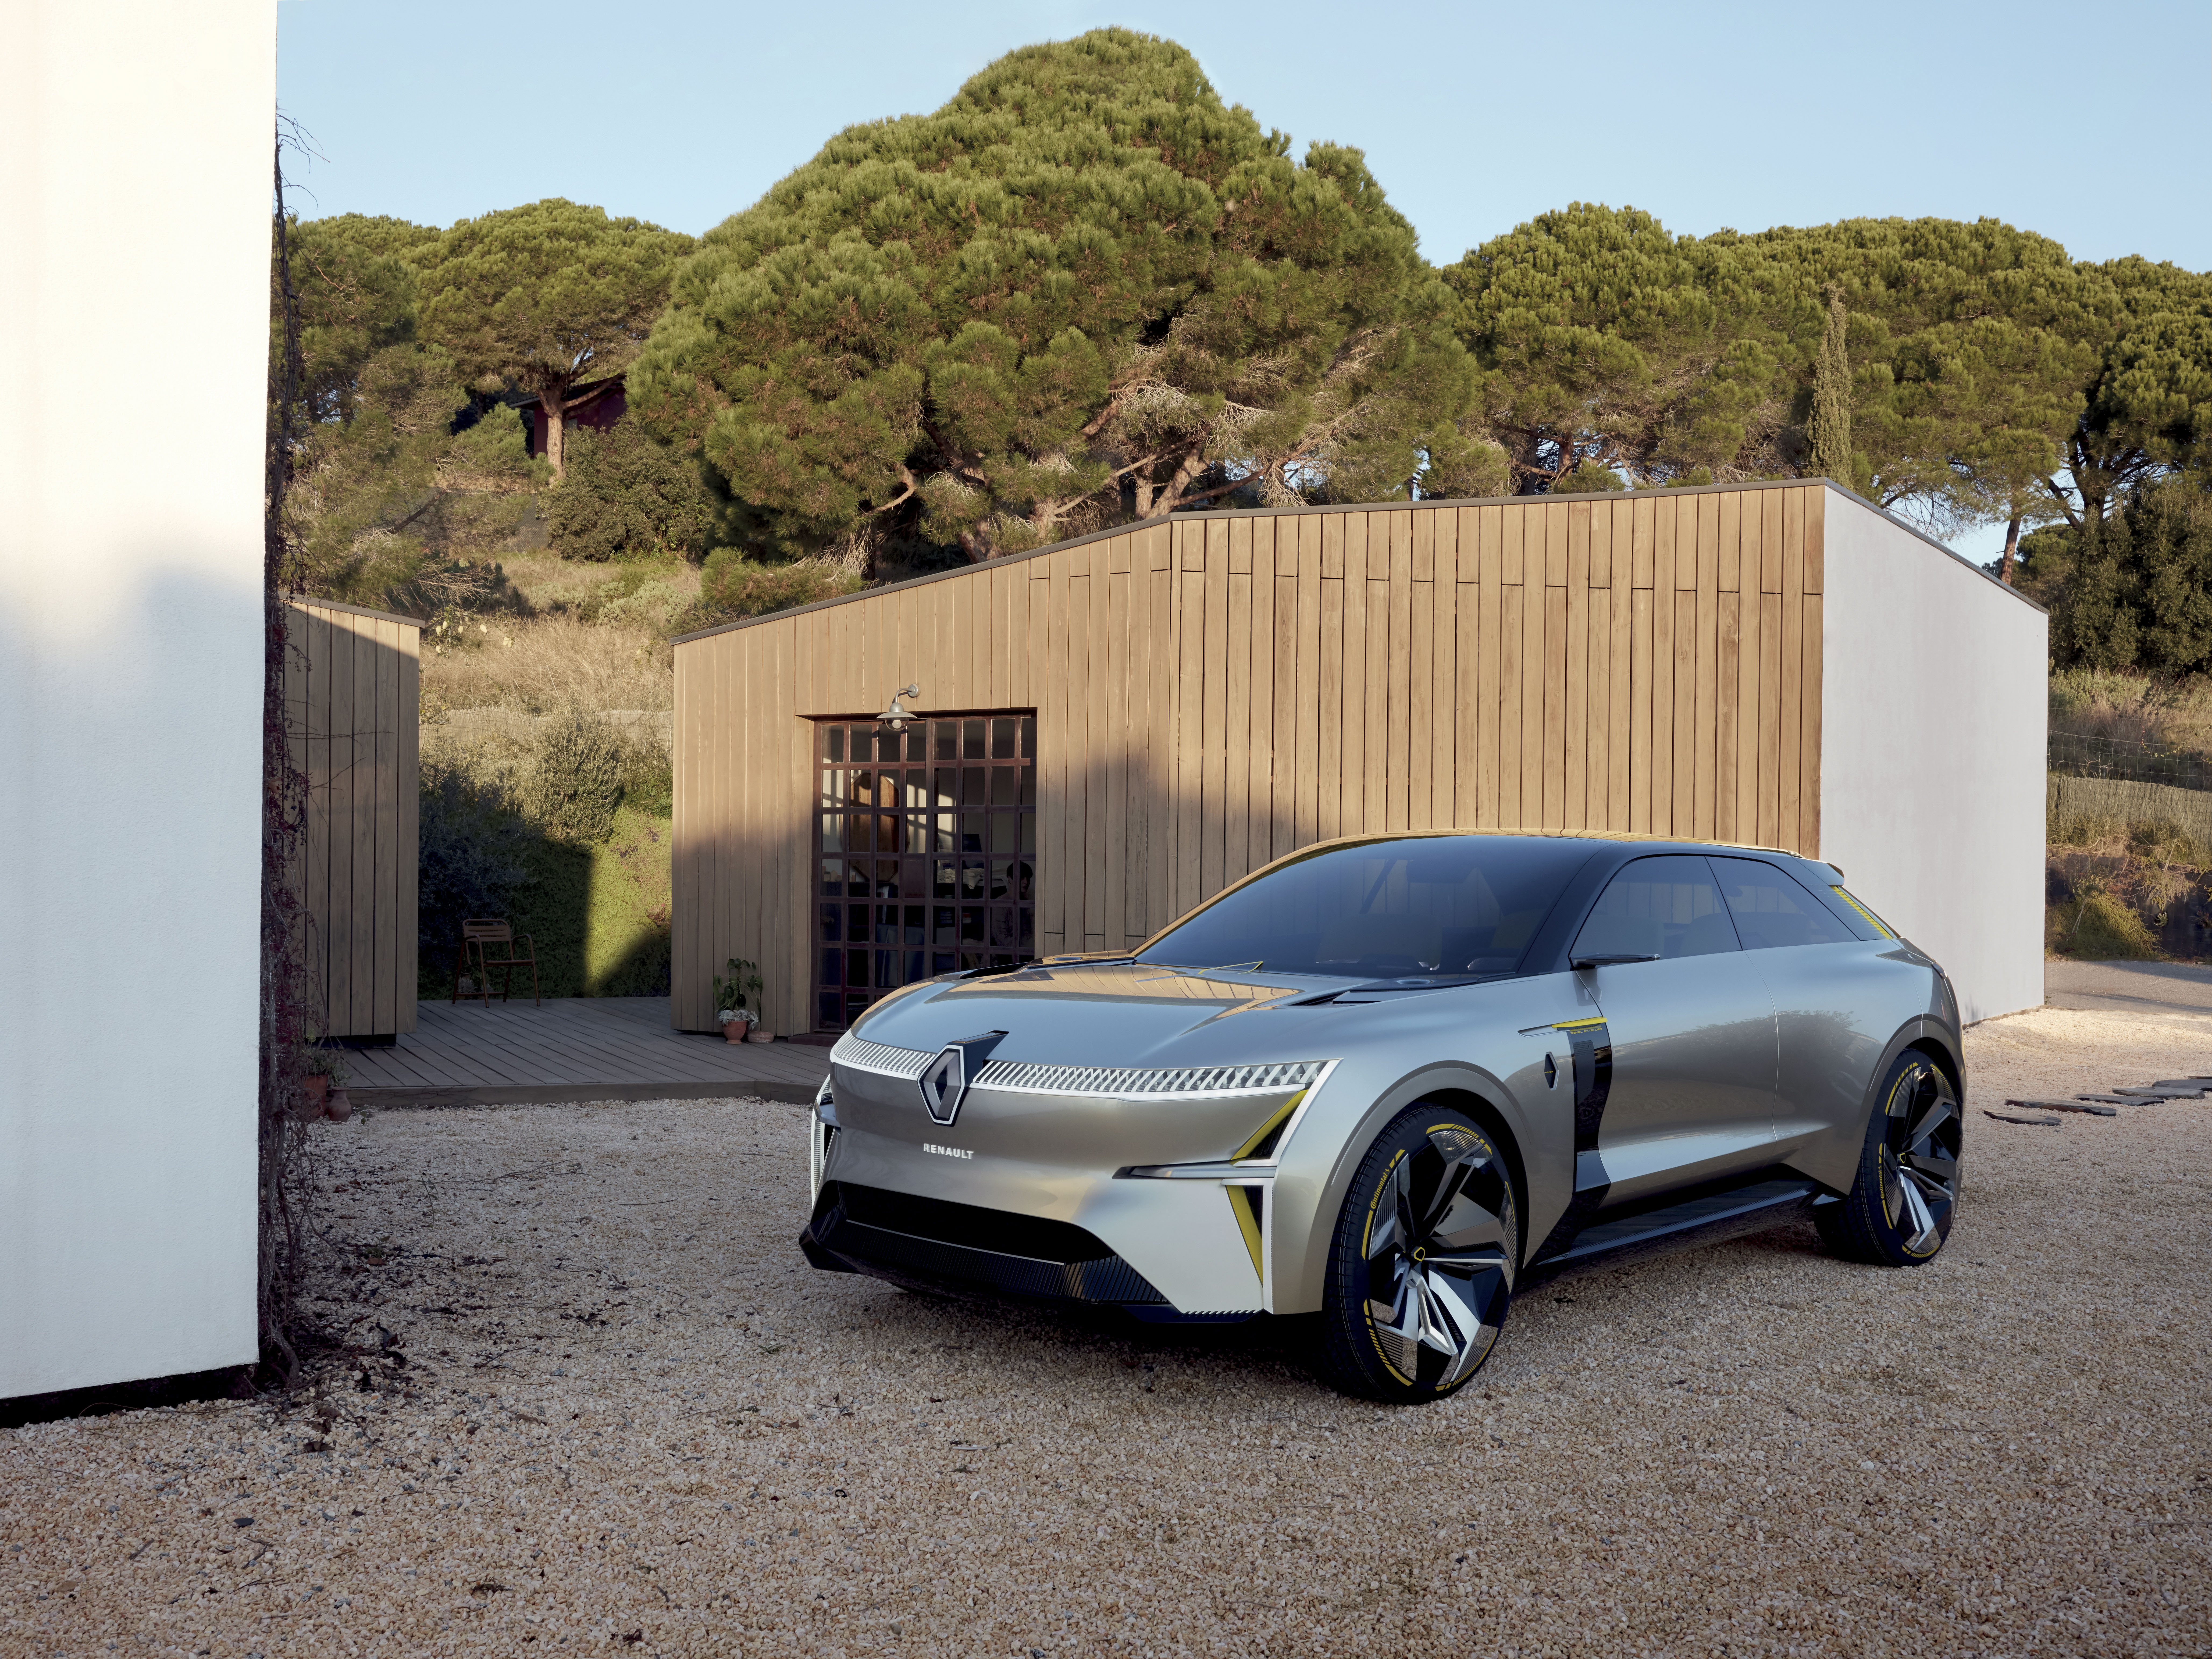 Новая модель 2020. Renault MORPHOZ Concept 2020. Электрокар Рено 2020. Новый Рено электрокар концепт. Рено джип 2020.